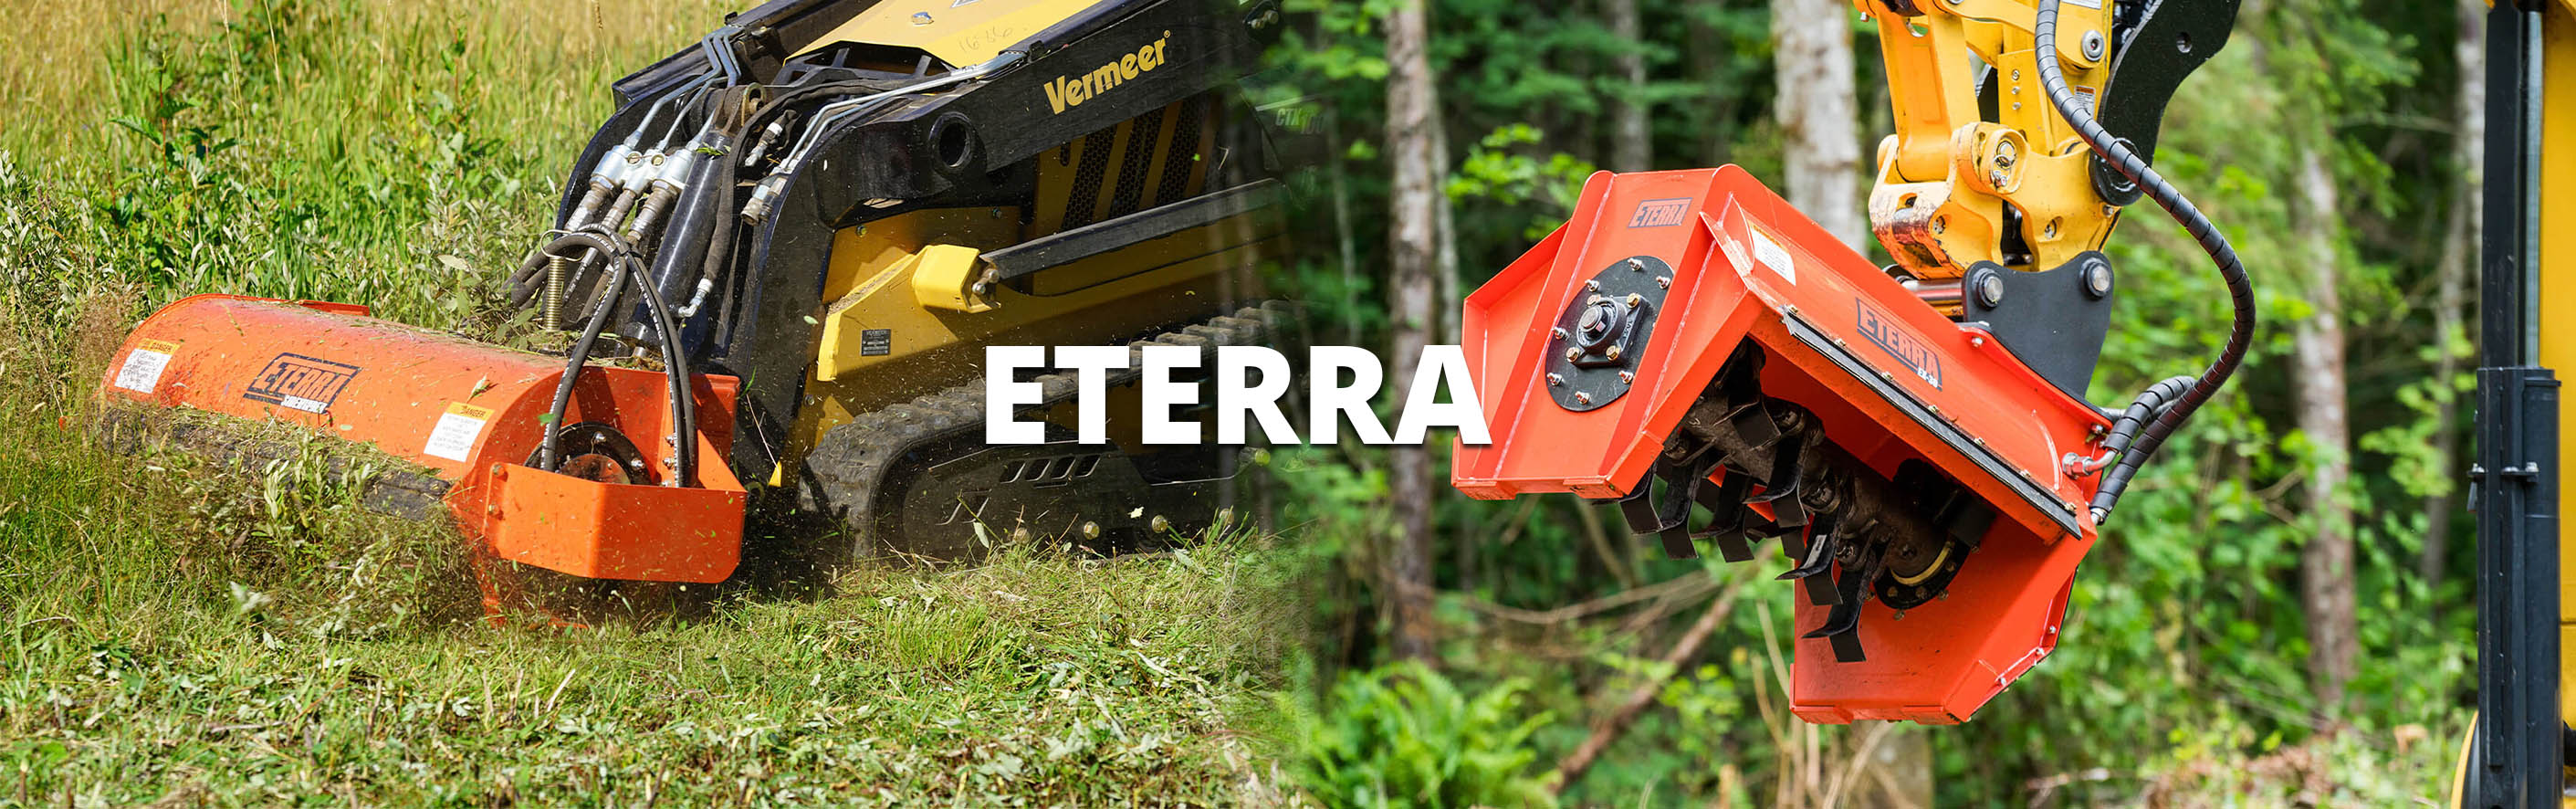 eterra-mini-skid-steer-and-excavator-attachments-banner.jpg